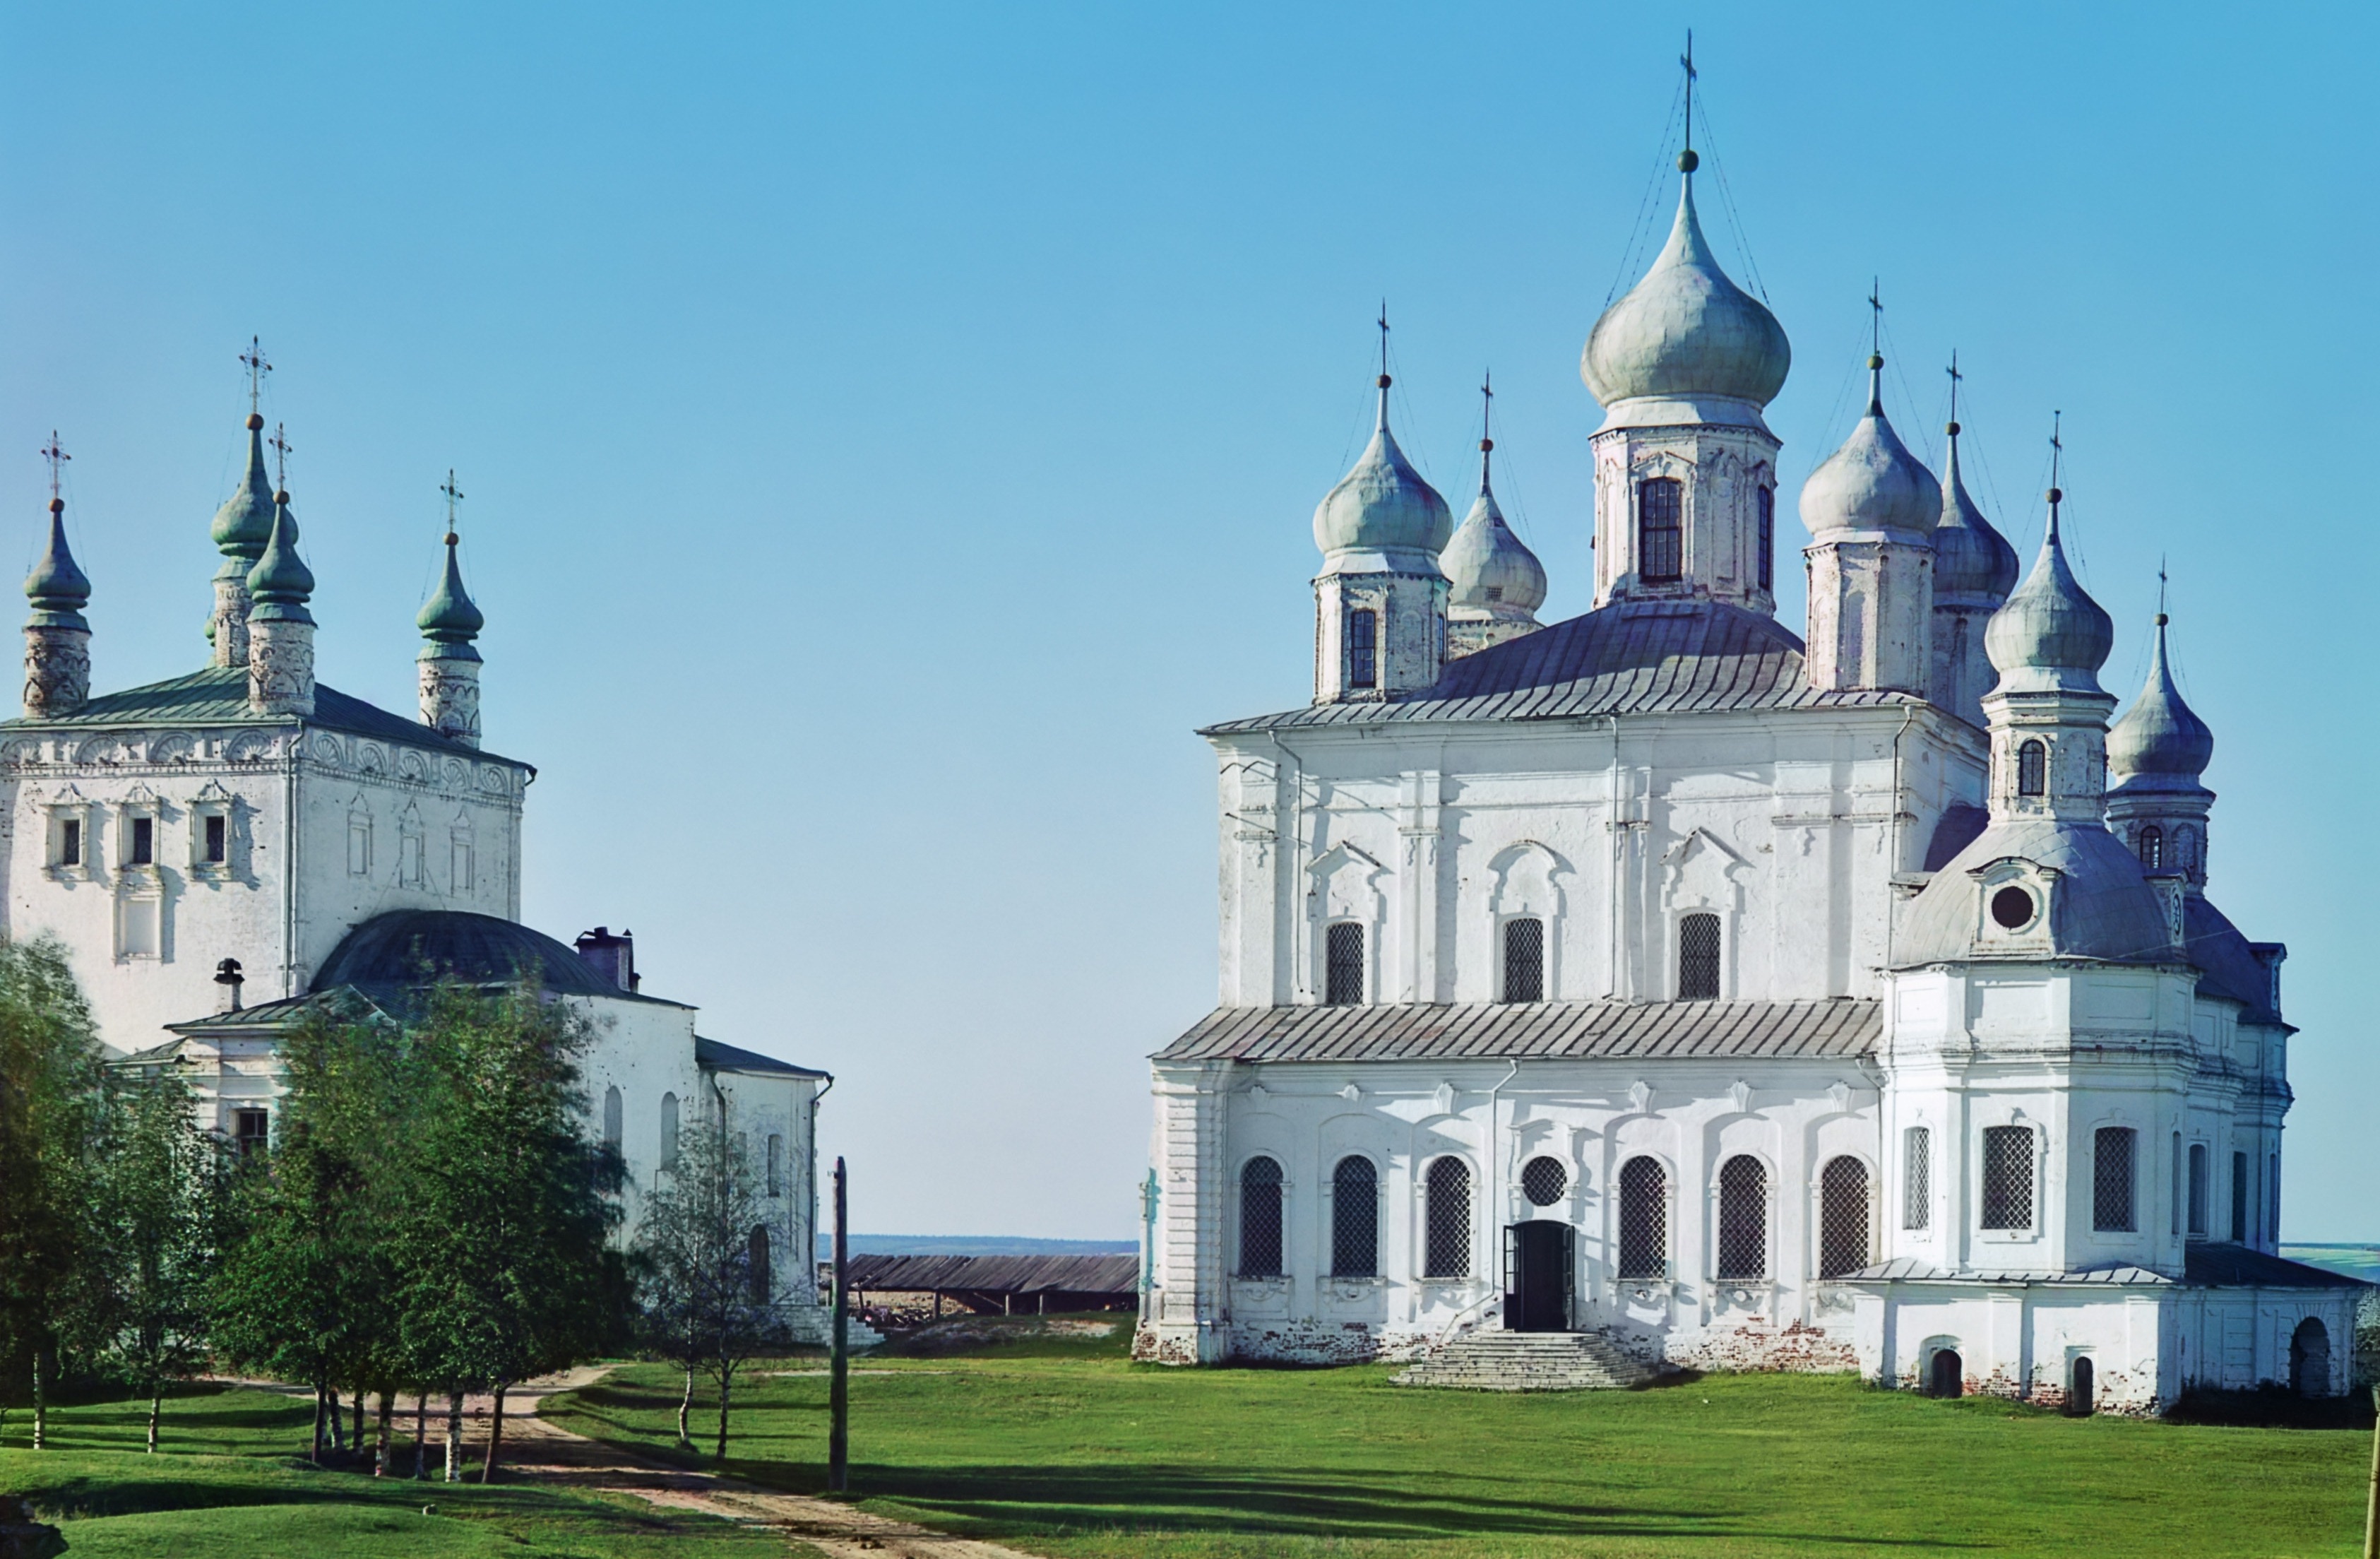 Photograph of the Goritsky Uspensky Monastery by Sergey Prokudin-Gorsky (1911)